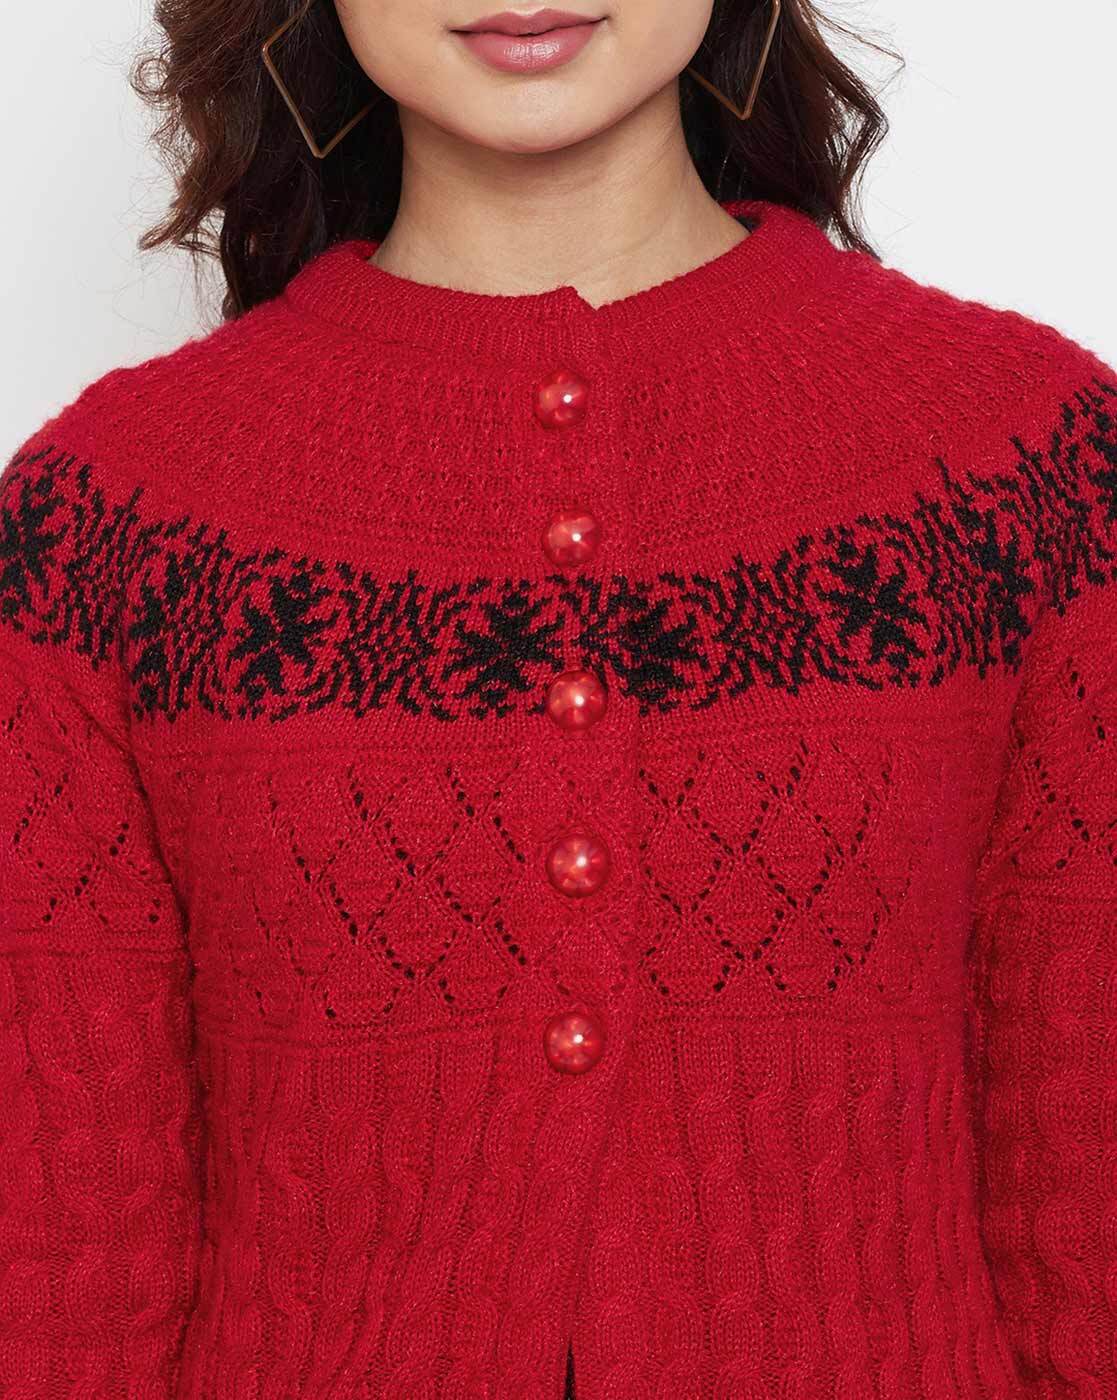 For Sale: red era cardigan size 3XL/4XL $65 : r/SwiftieMerch